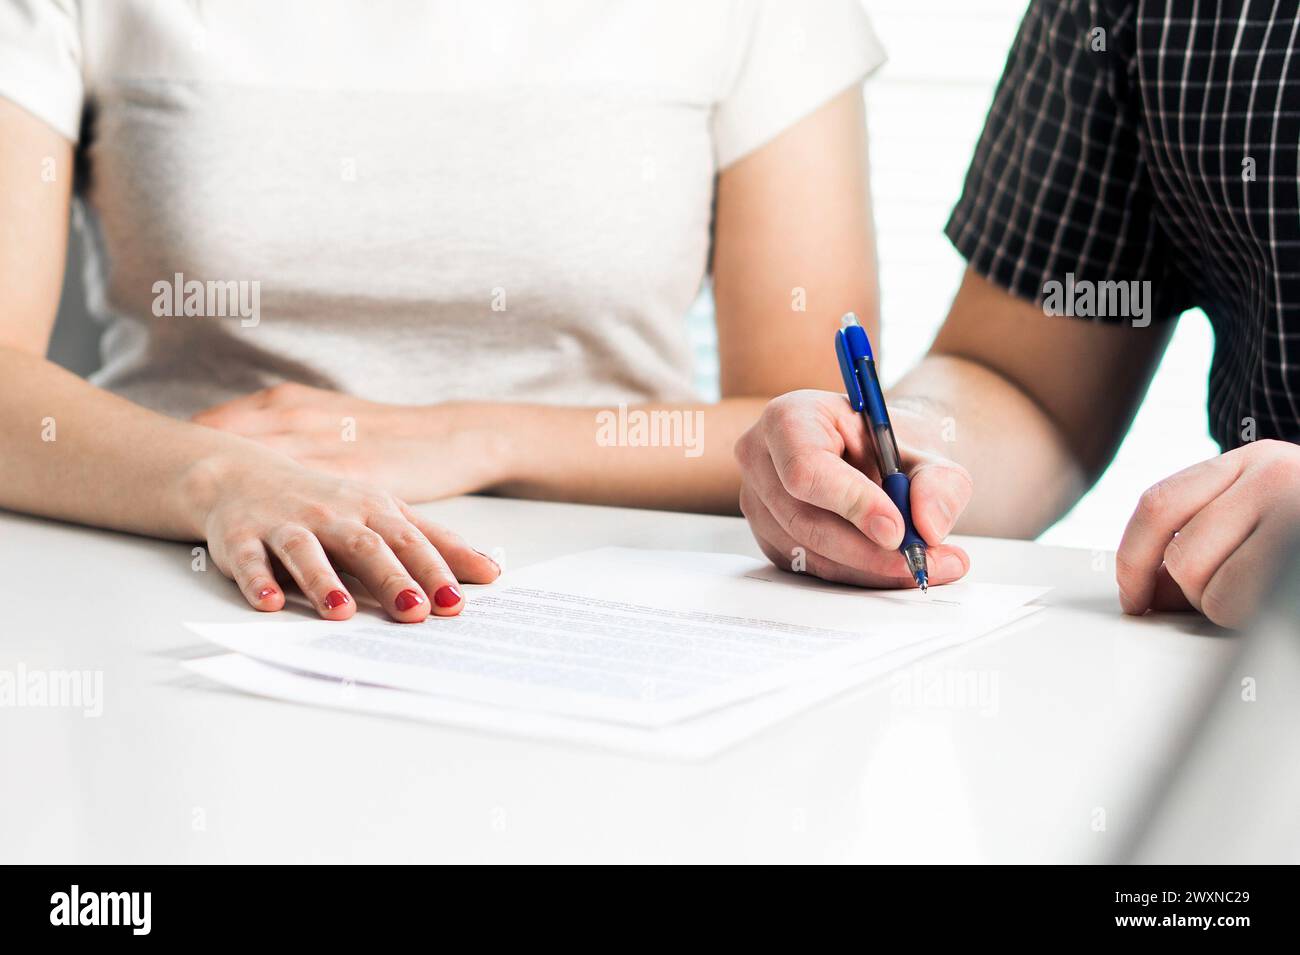 Scheidungsvereinbarung. Ein Paar unterzeichnet ein rechtliches Dokument. Ehevertrag, Ehevertrag. Anwaltsversammlung. Trennung, Trennung oder Klage. Stockfoto